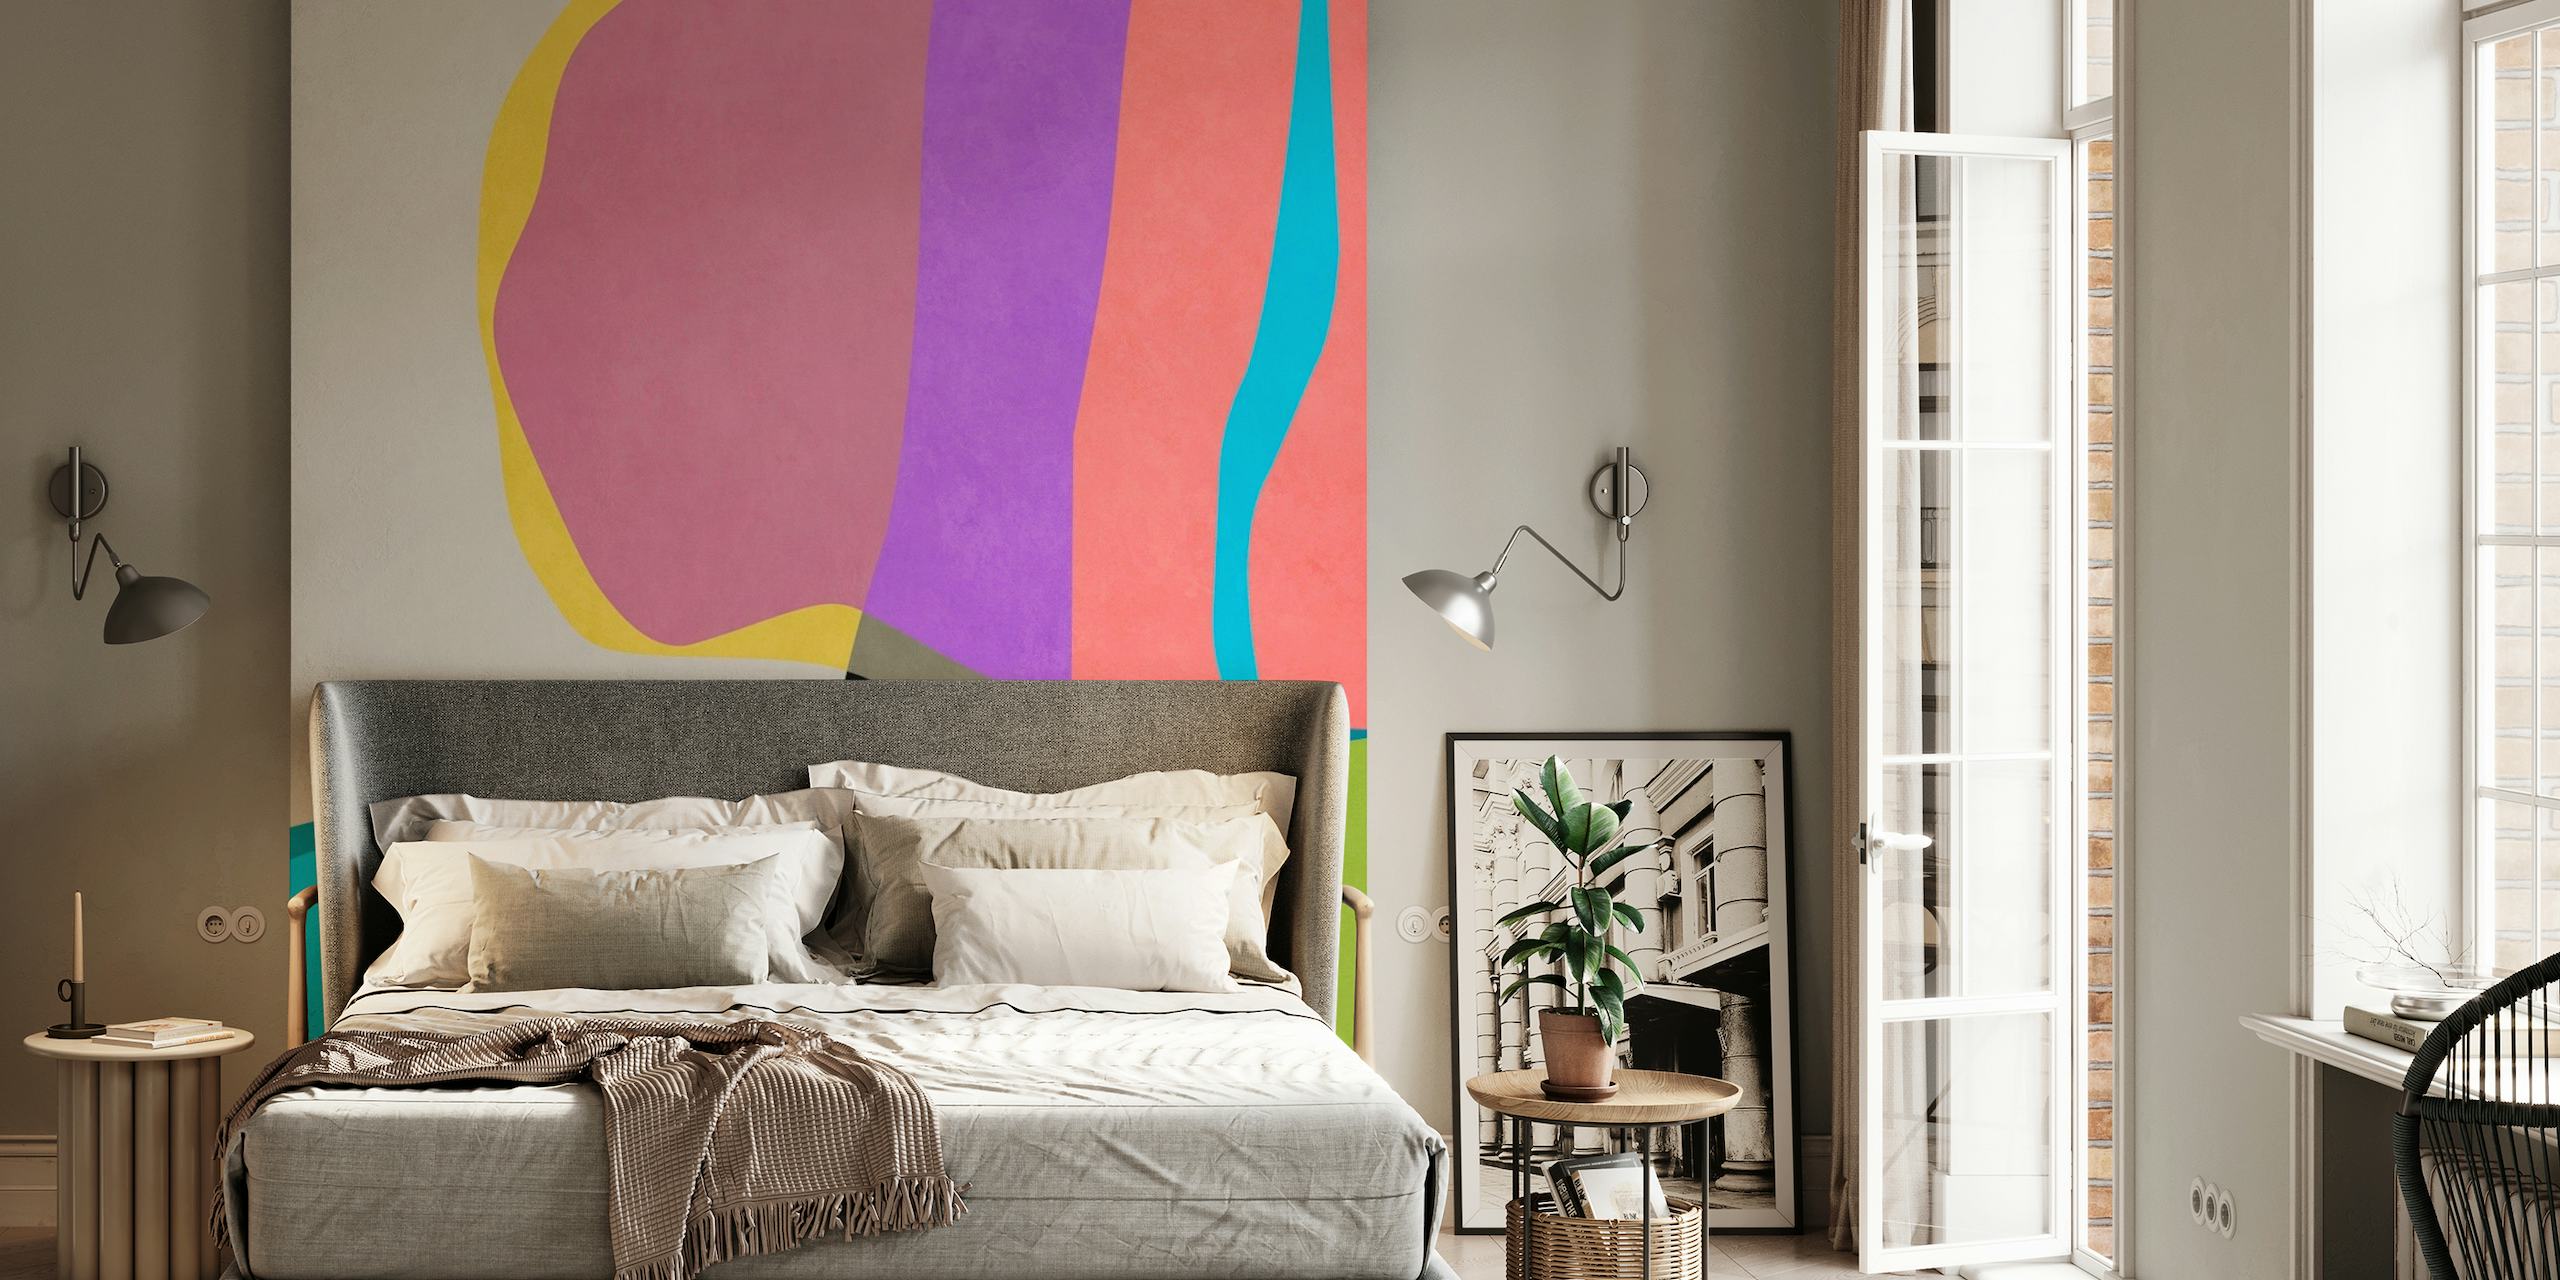 Abstraktní nástěnná malba se zářivými barvami a plynulými tvary vytvářející pocit pohybu